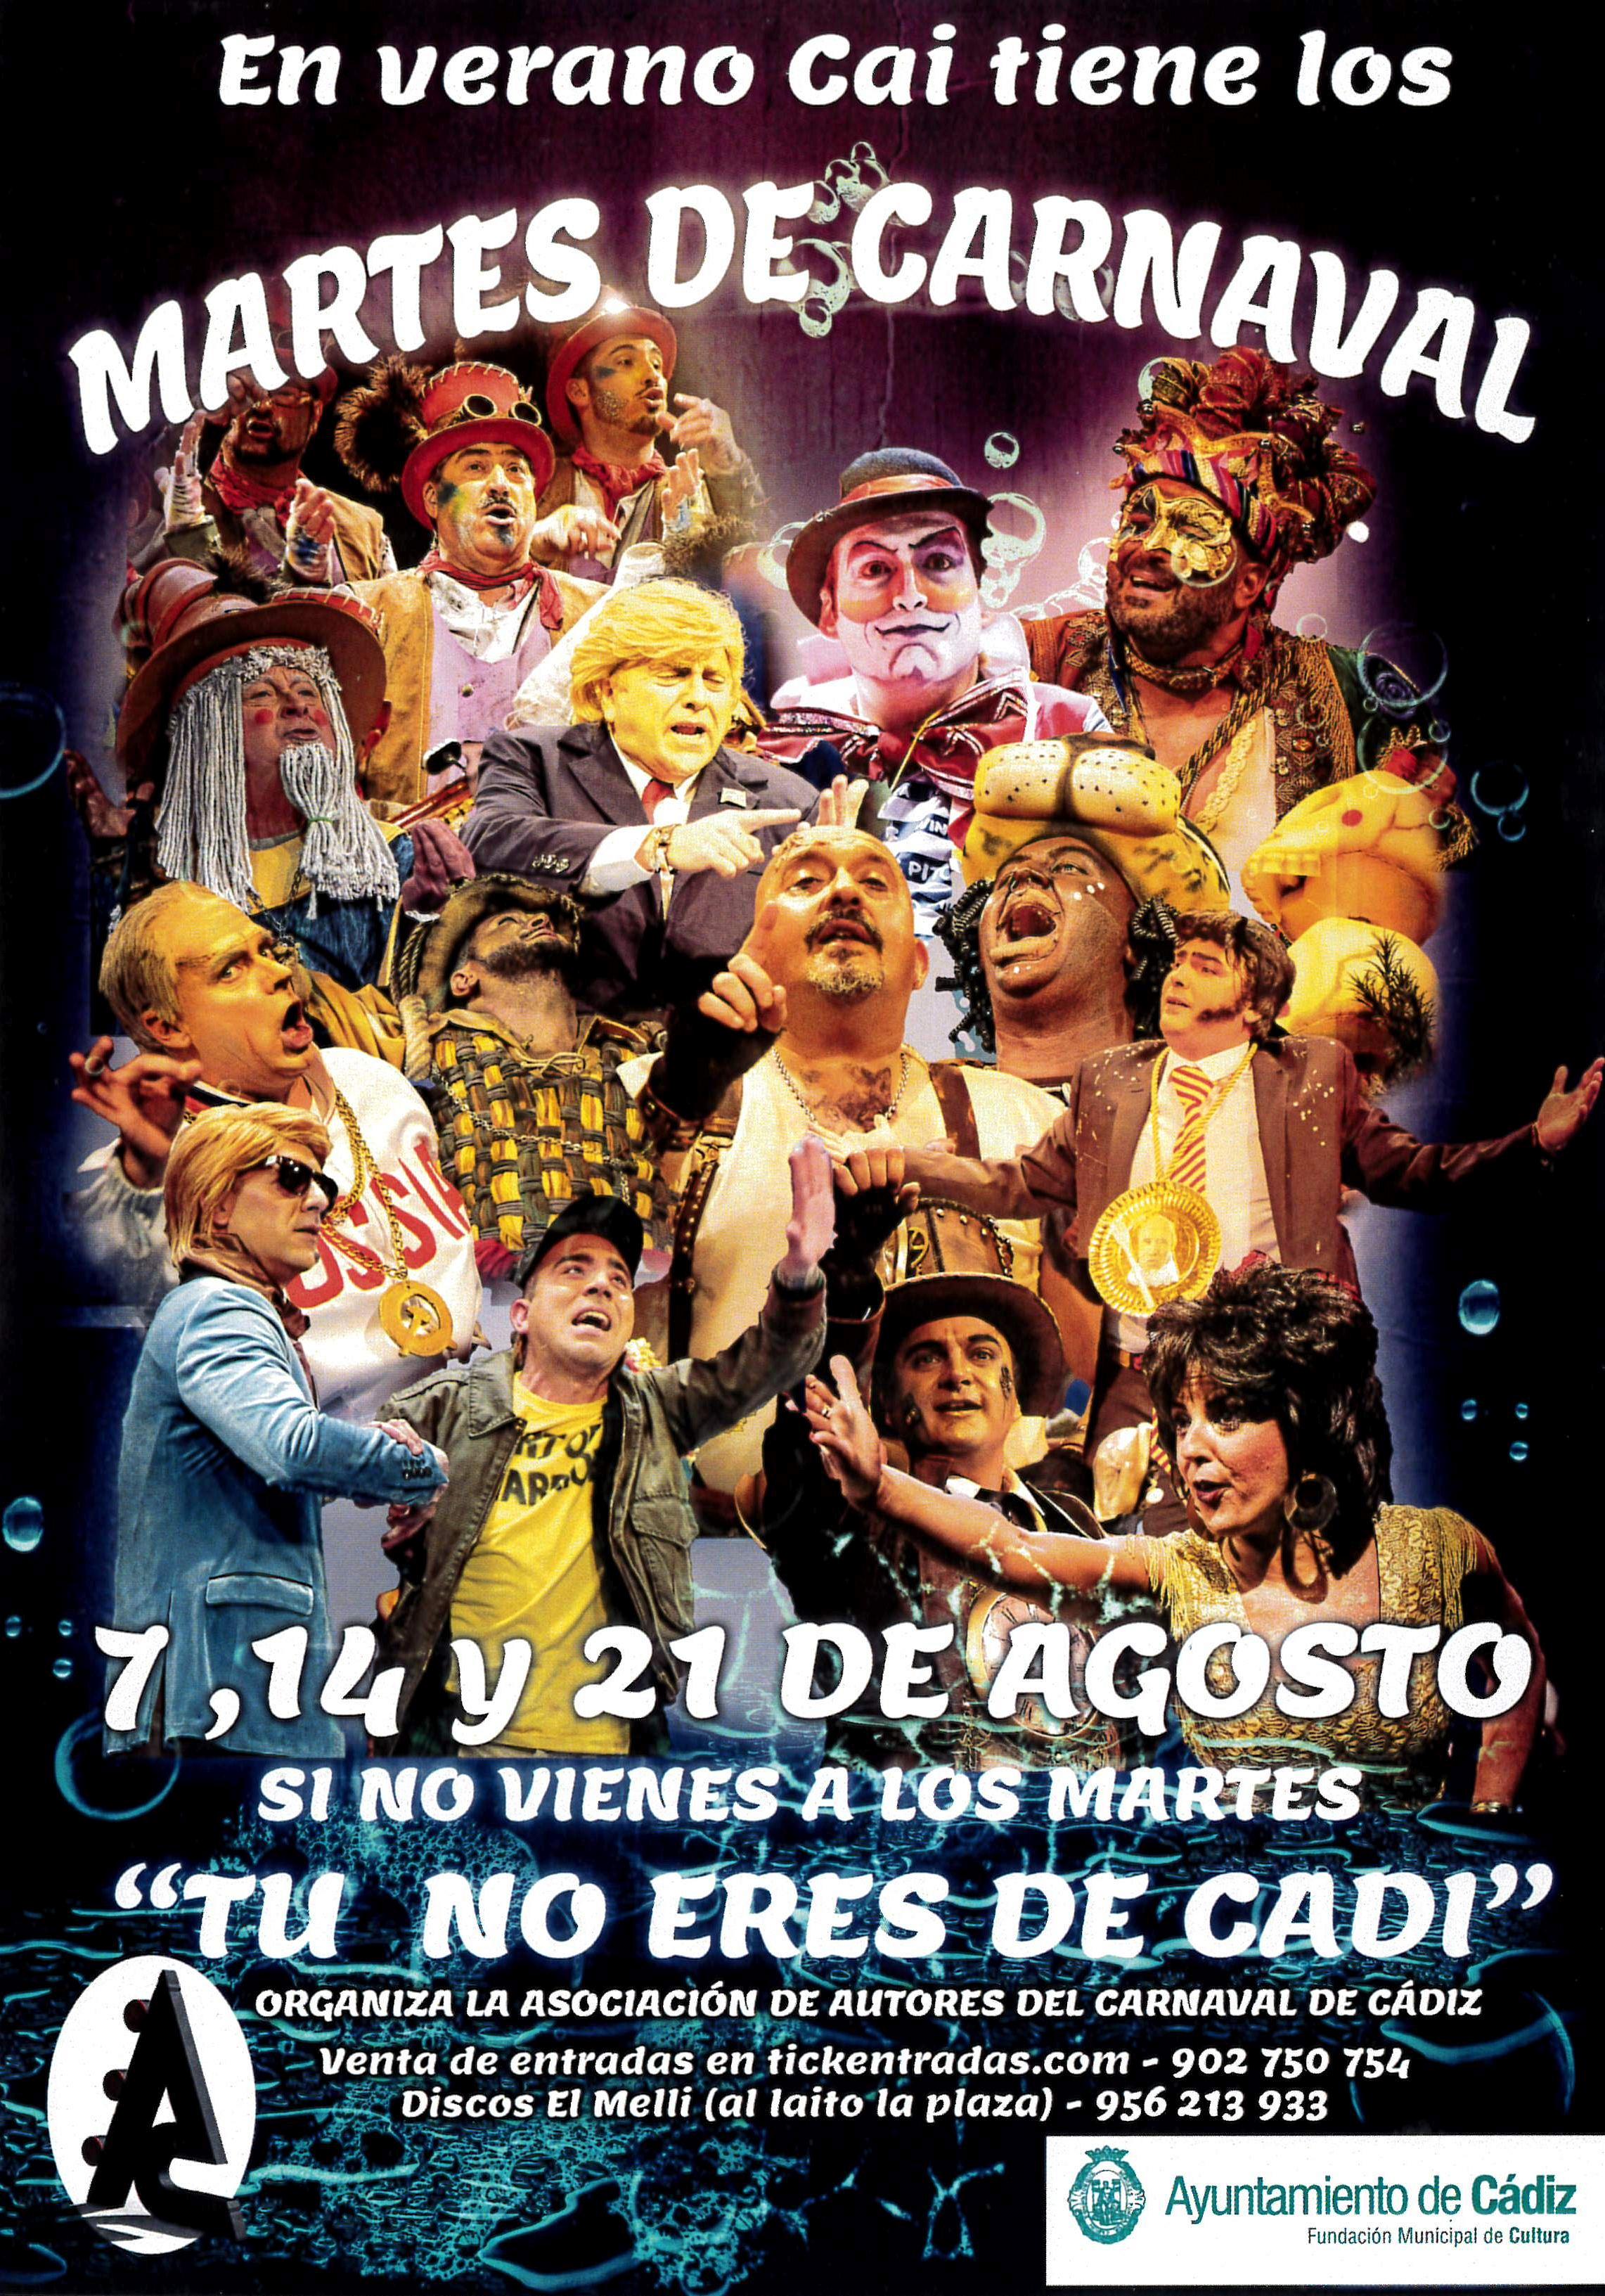 Martes del Carnaval - El Faro Catering